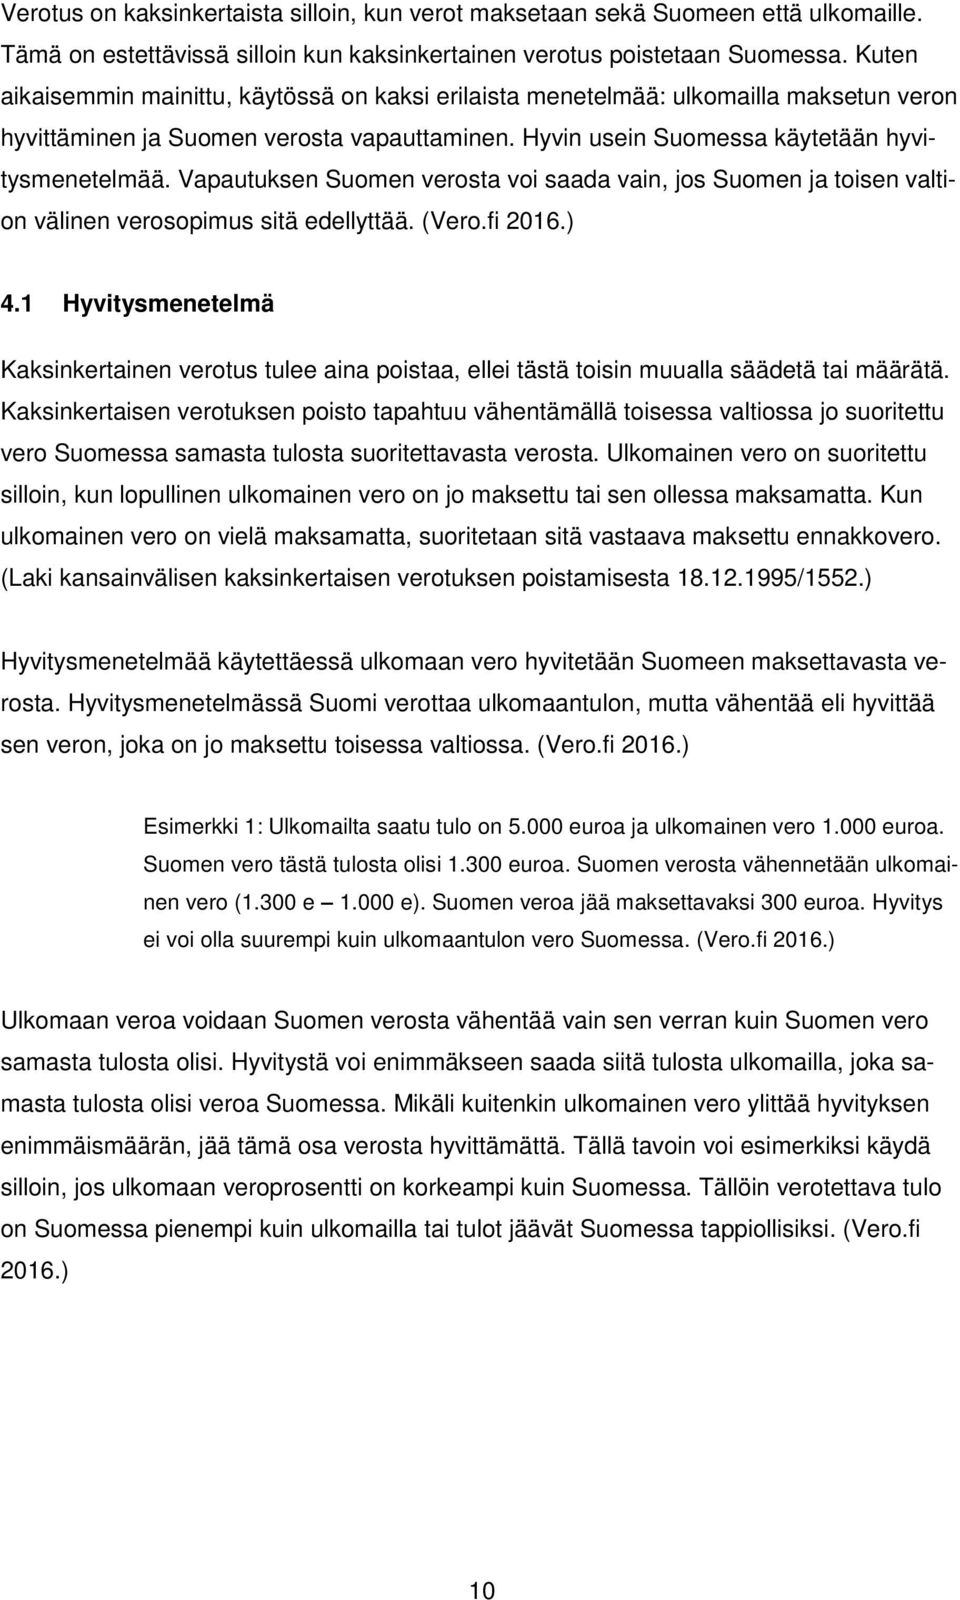 Vapautuksen Suomen verosta voi saada vain, jos Suomen ja toisen valtion välinen verosopimus sitä edellyttää. (Vero.fi 2016.) 4.